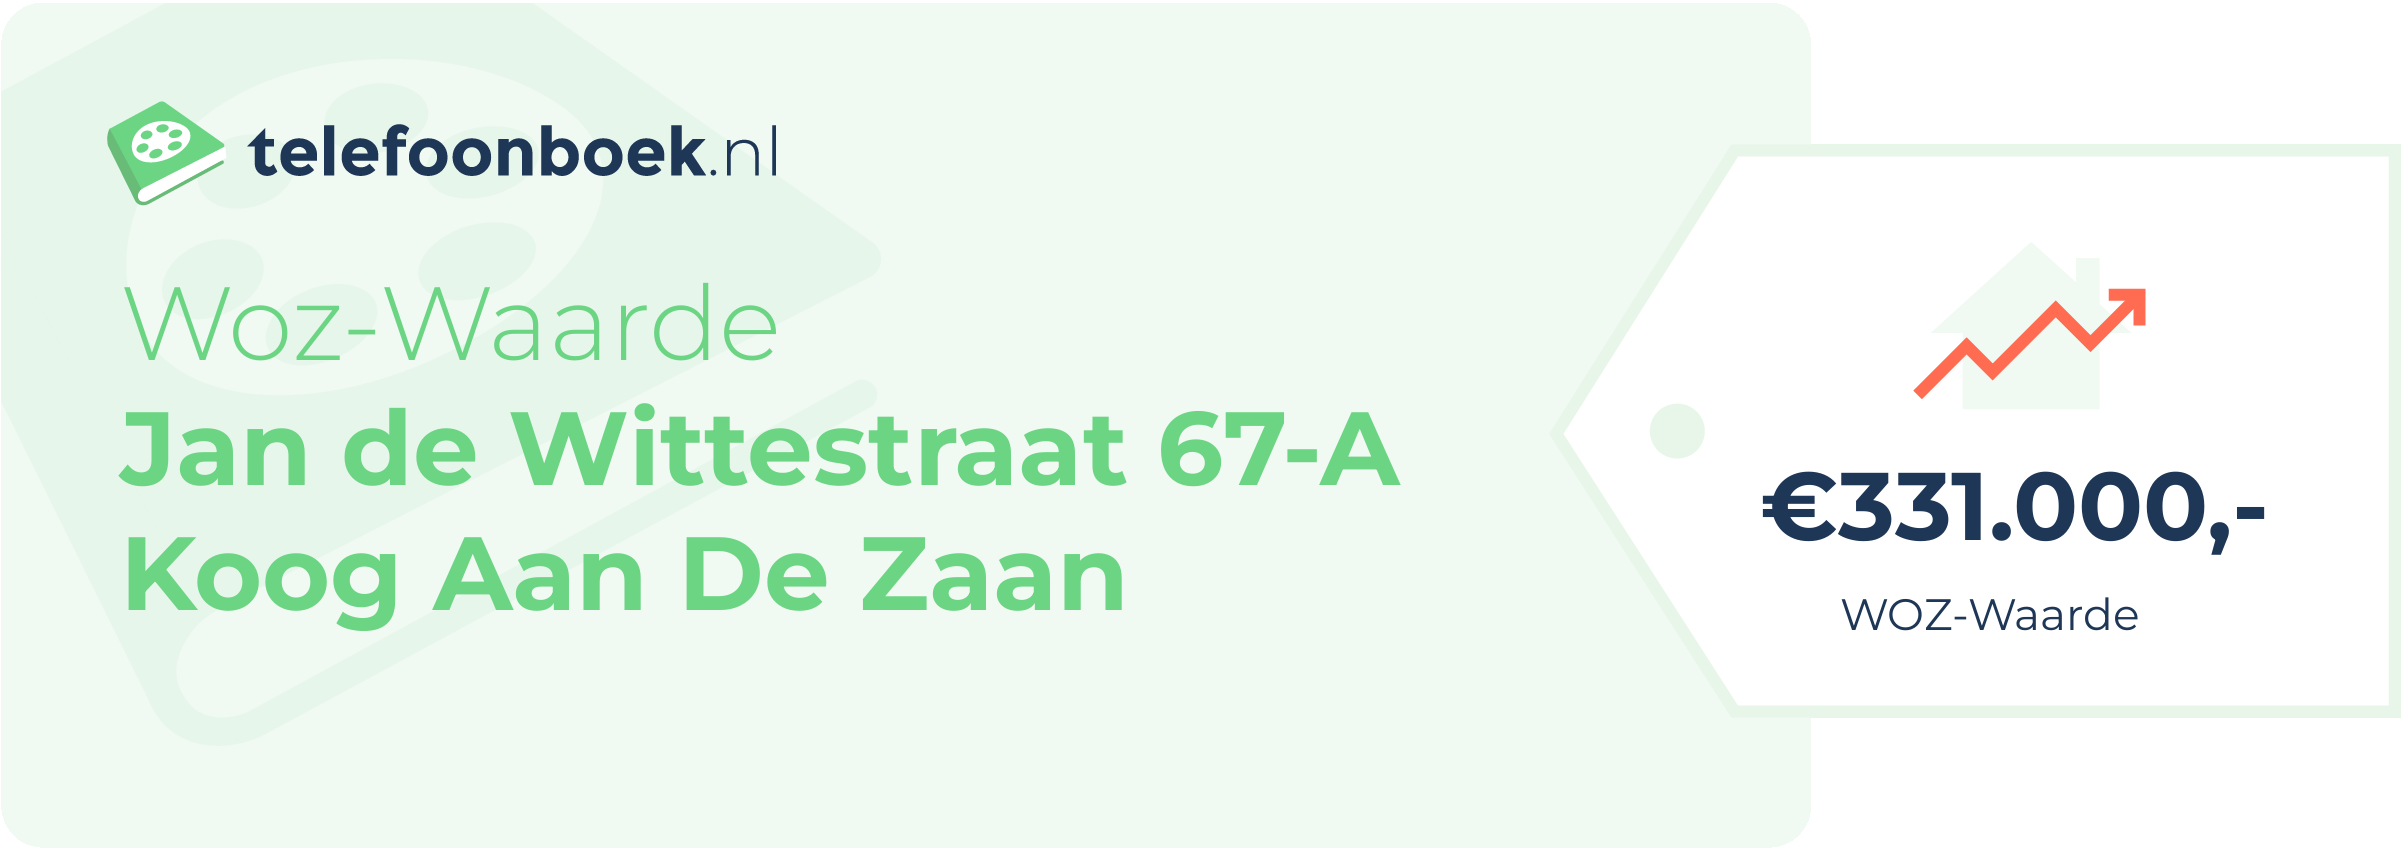 WOZ-waarde Jan De Wittestraat 67-A Koog Aan De Zaan